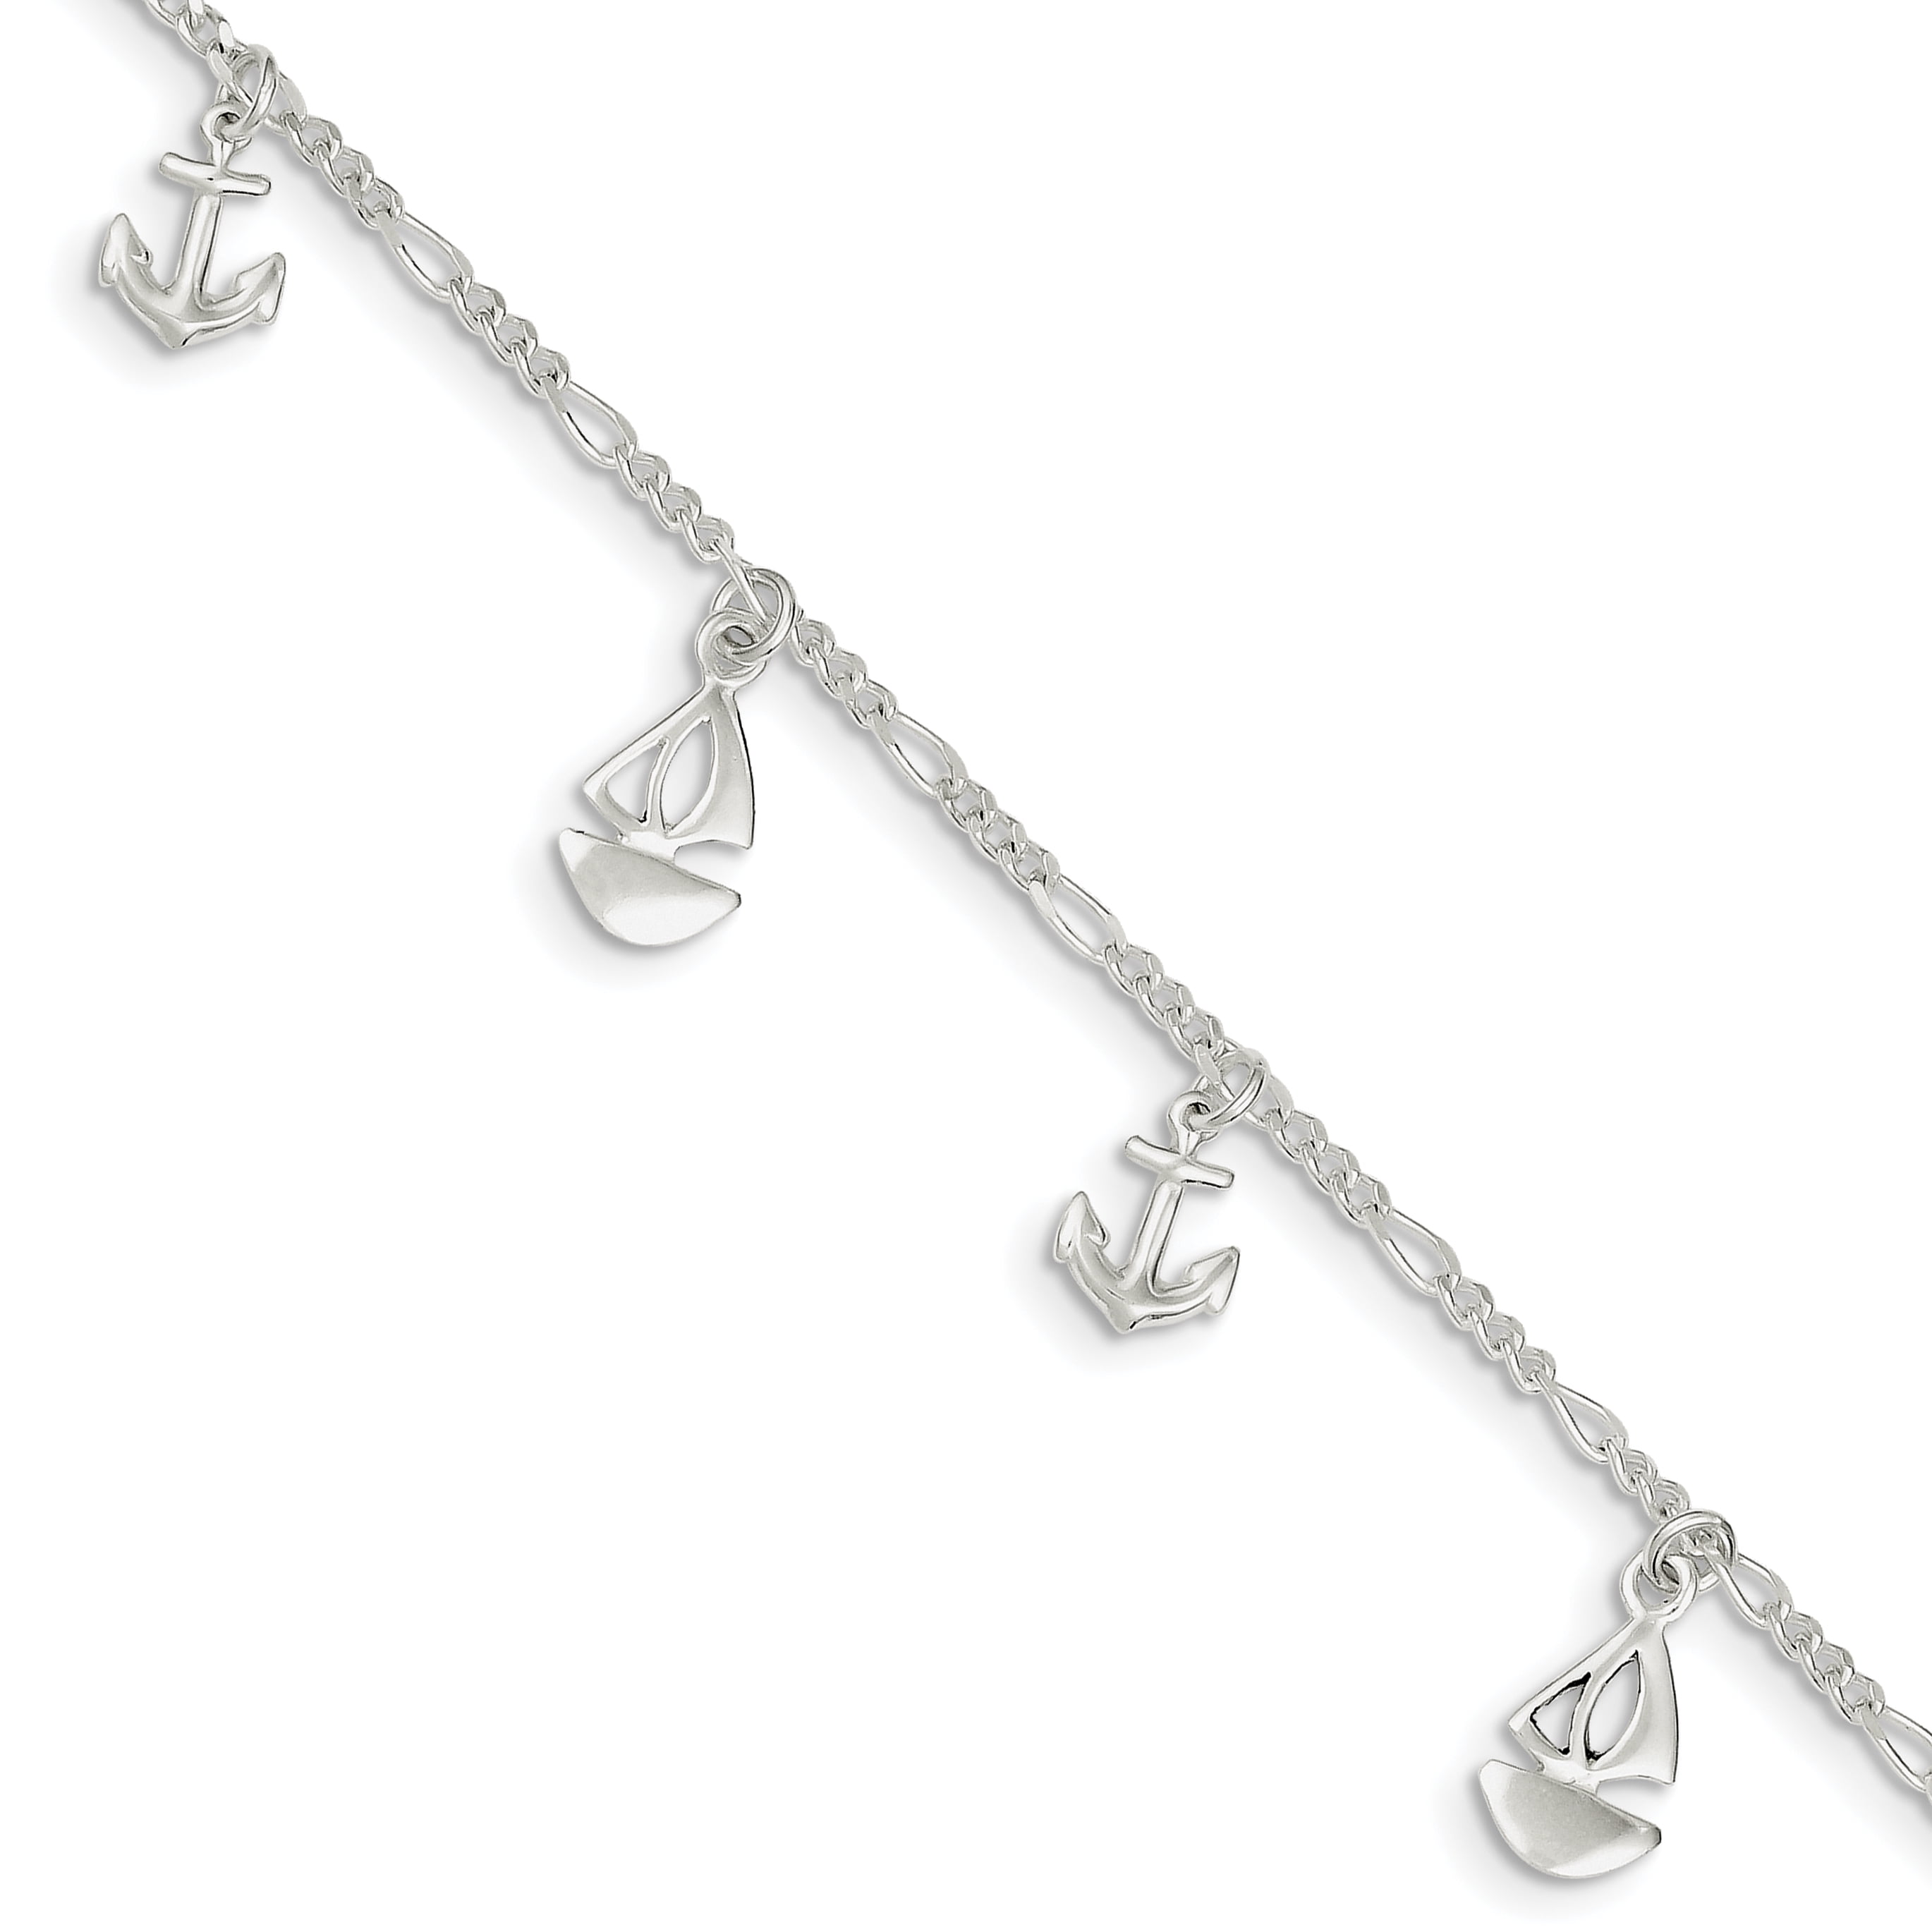 925 Sterling Silver Anchor Charm Bracelet Adjustable Length